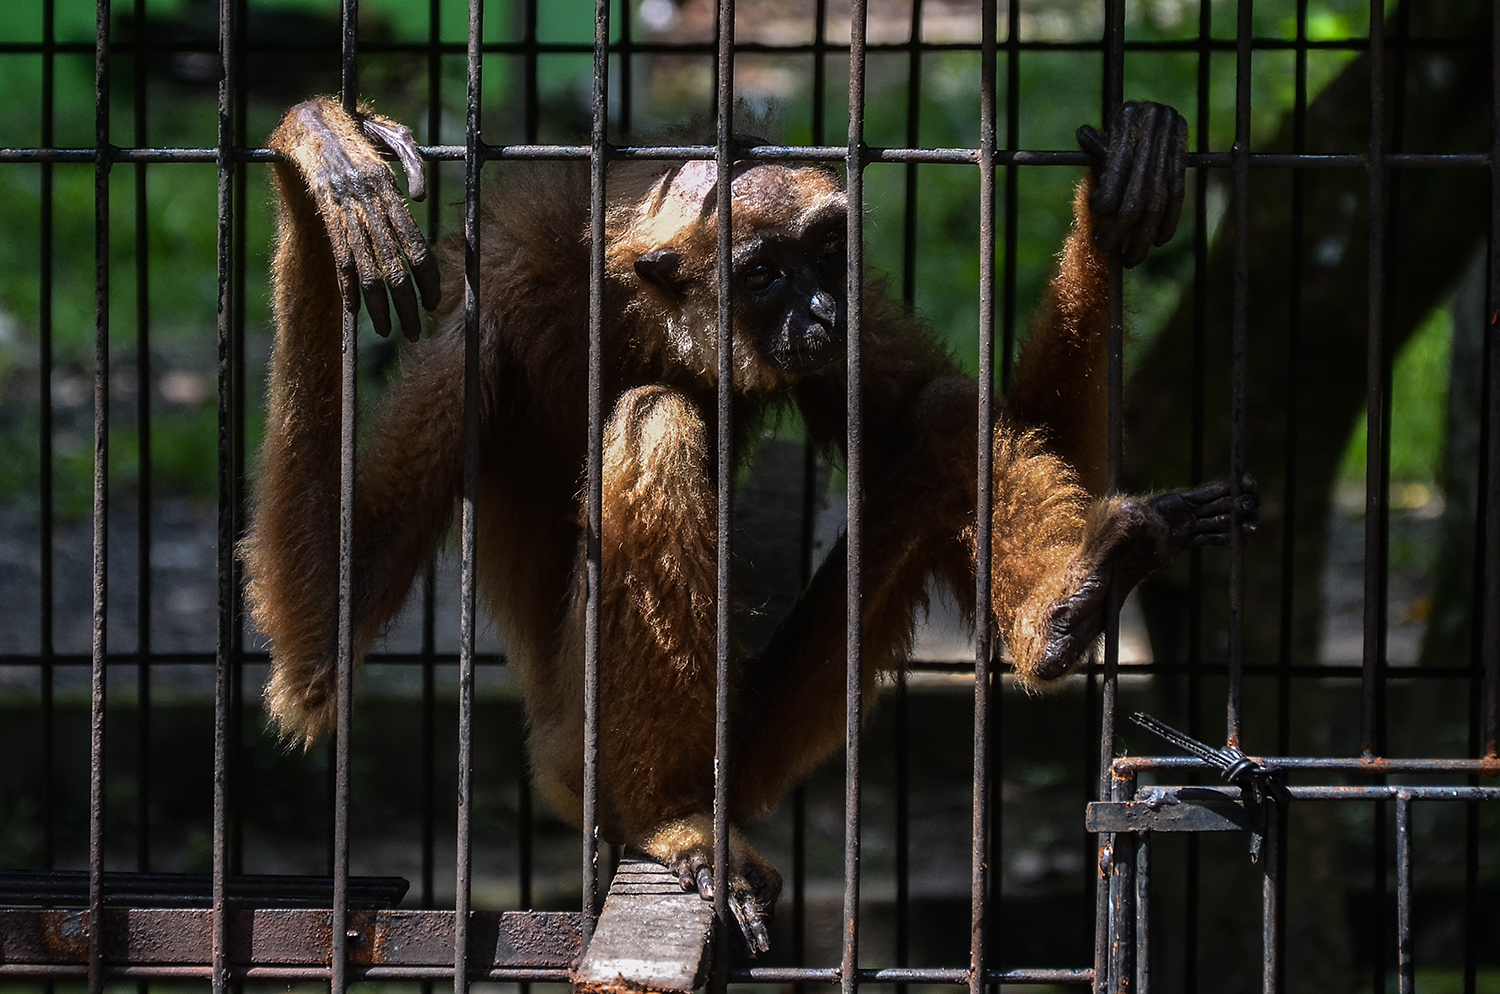 Evakuasi Owa Ungko, Primata Yang Terancam Punah